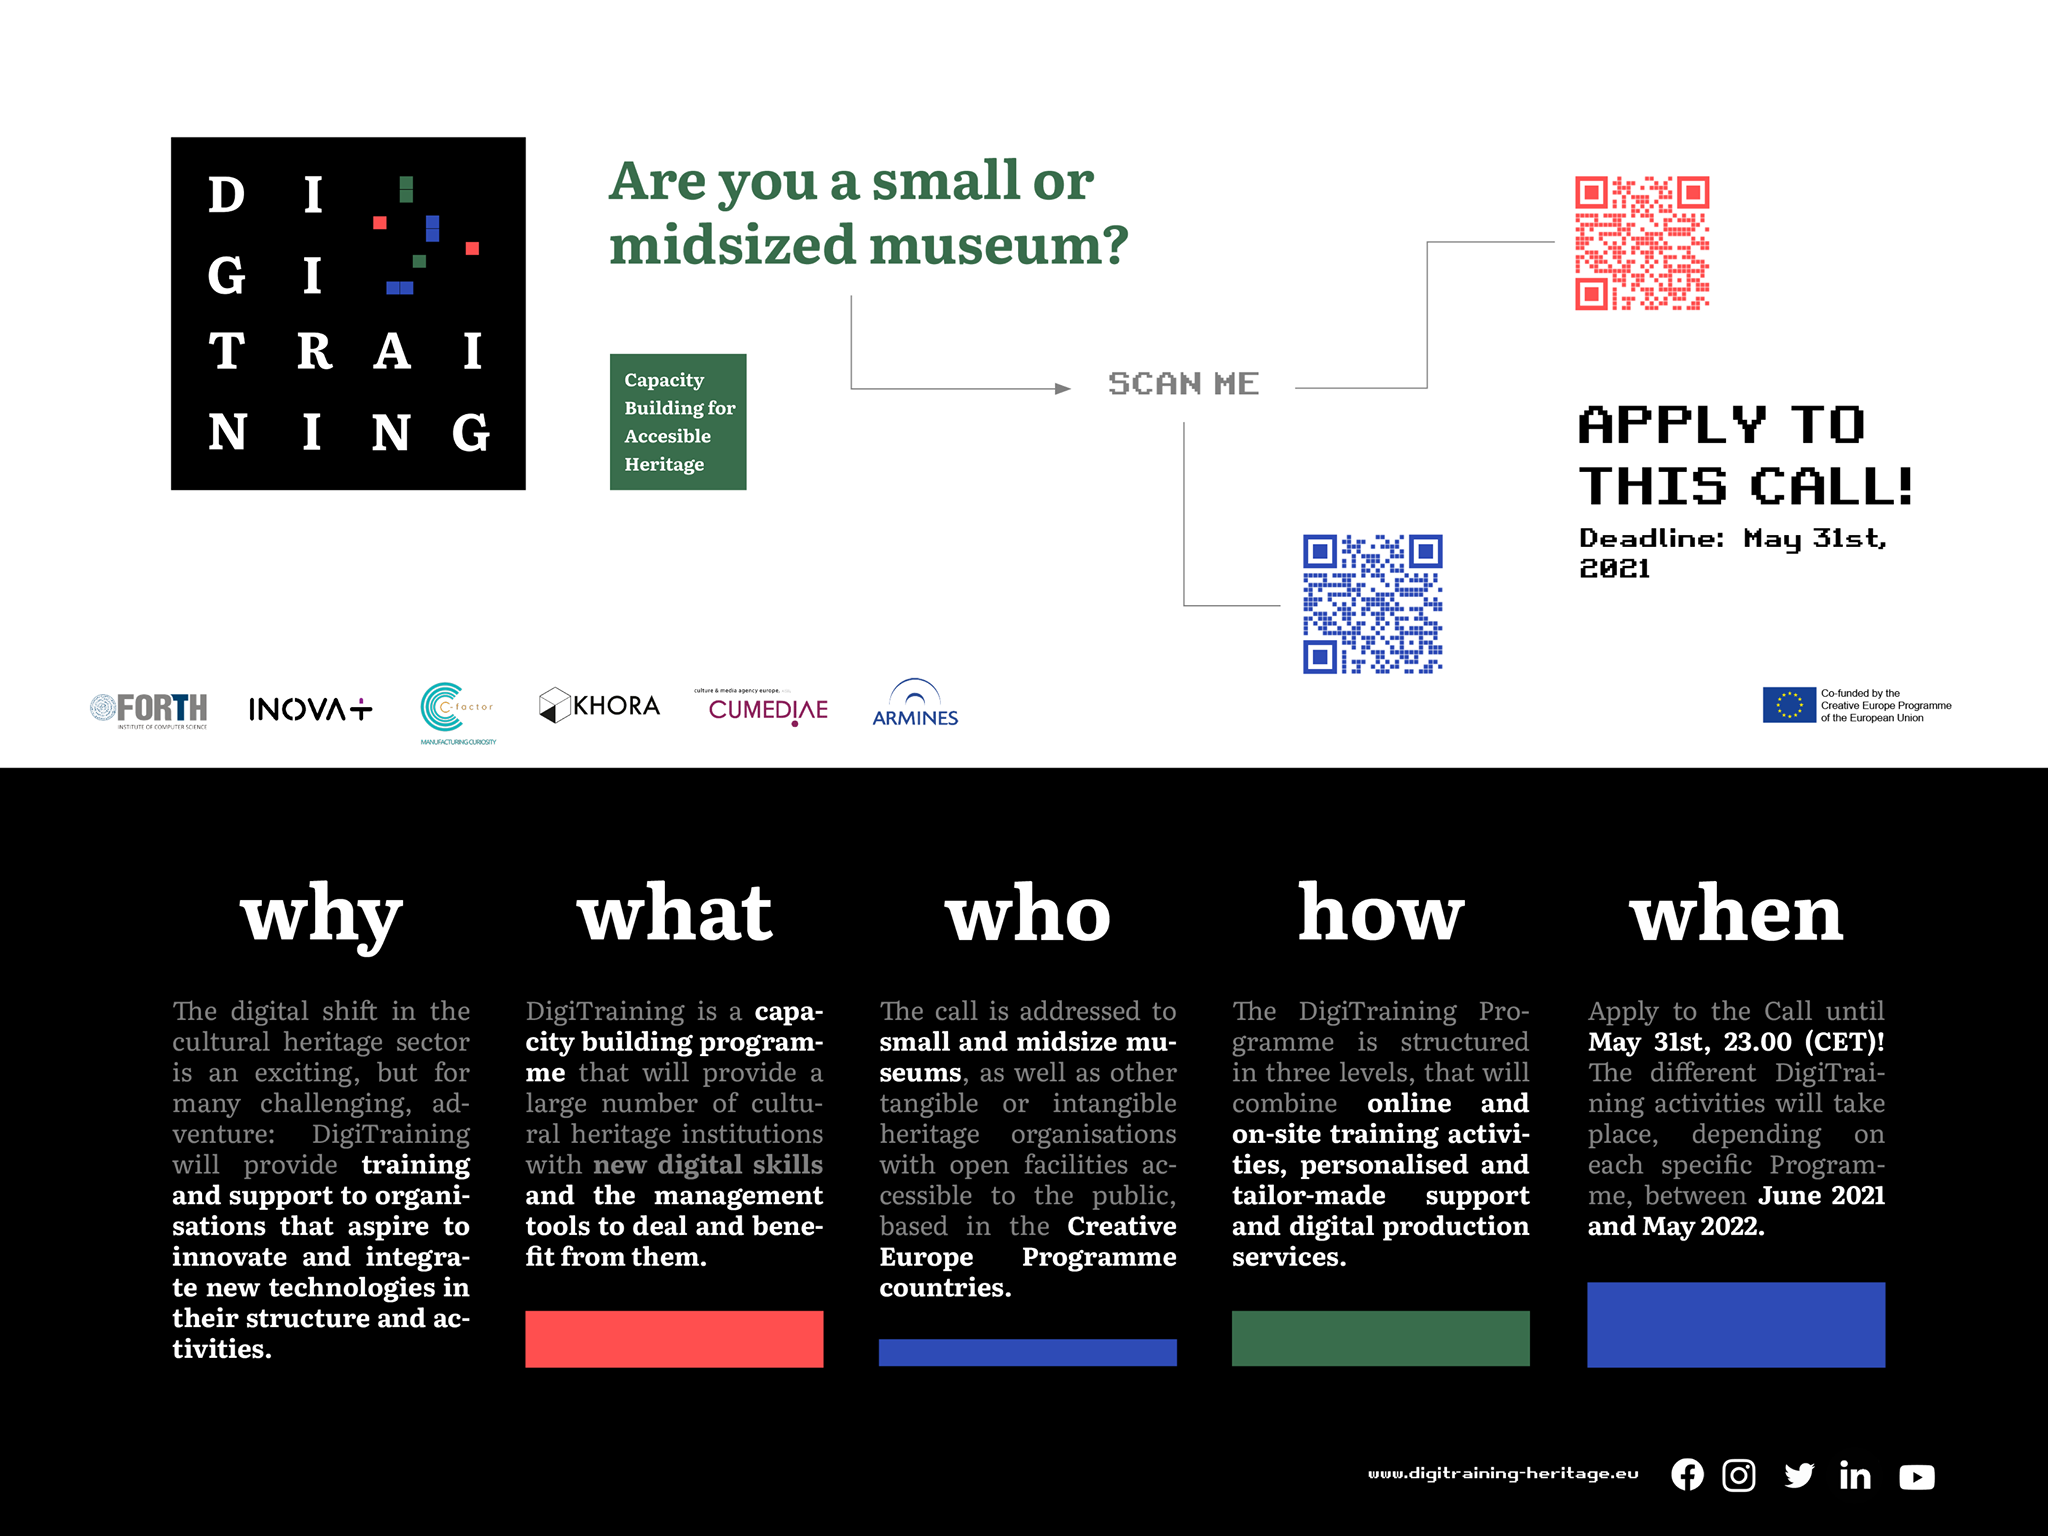 DigiTraining: programa de capacitação para Museus de pequena e média dimensão, até 31 de Maio